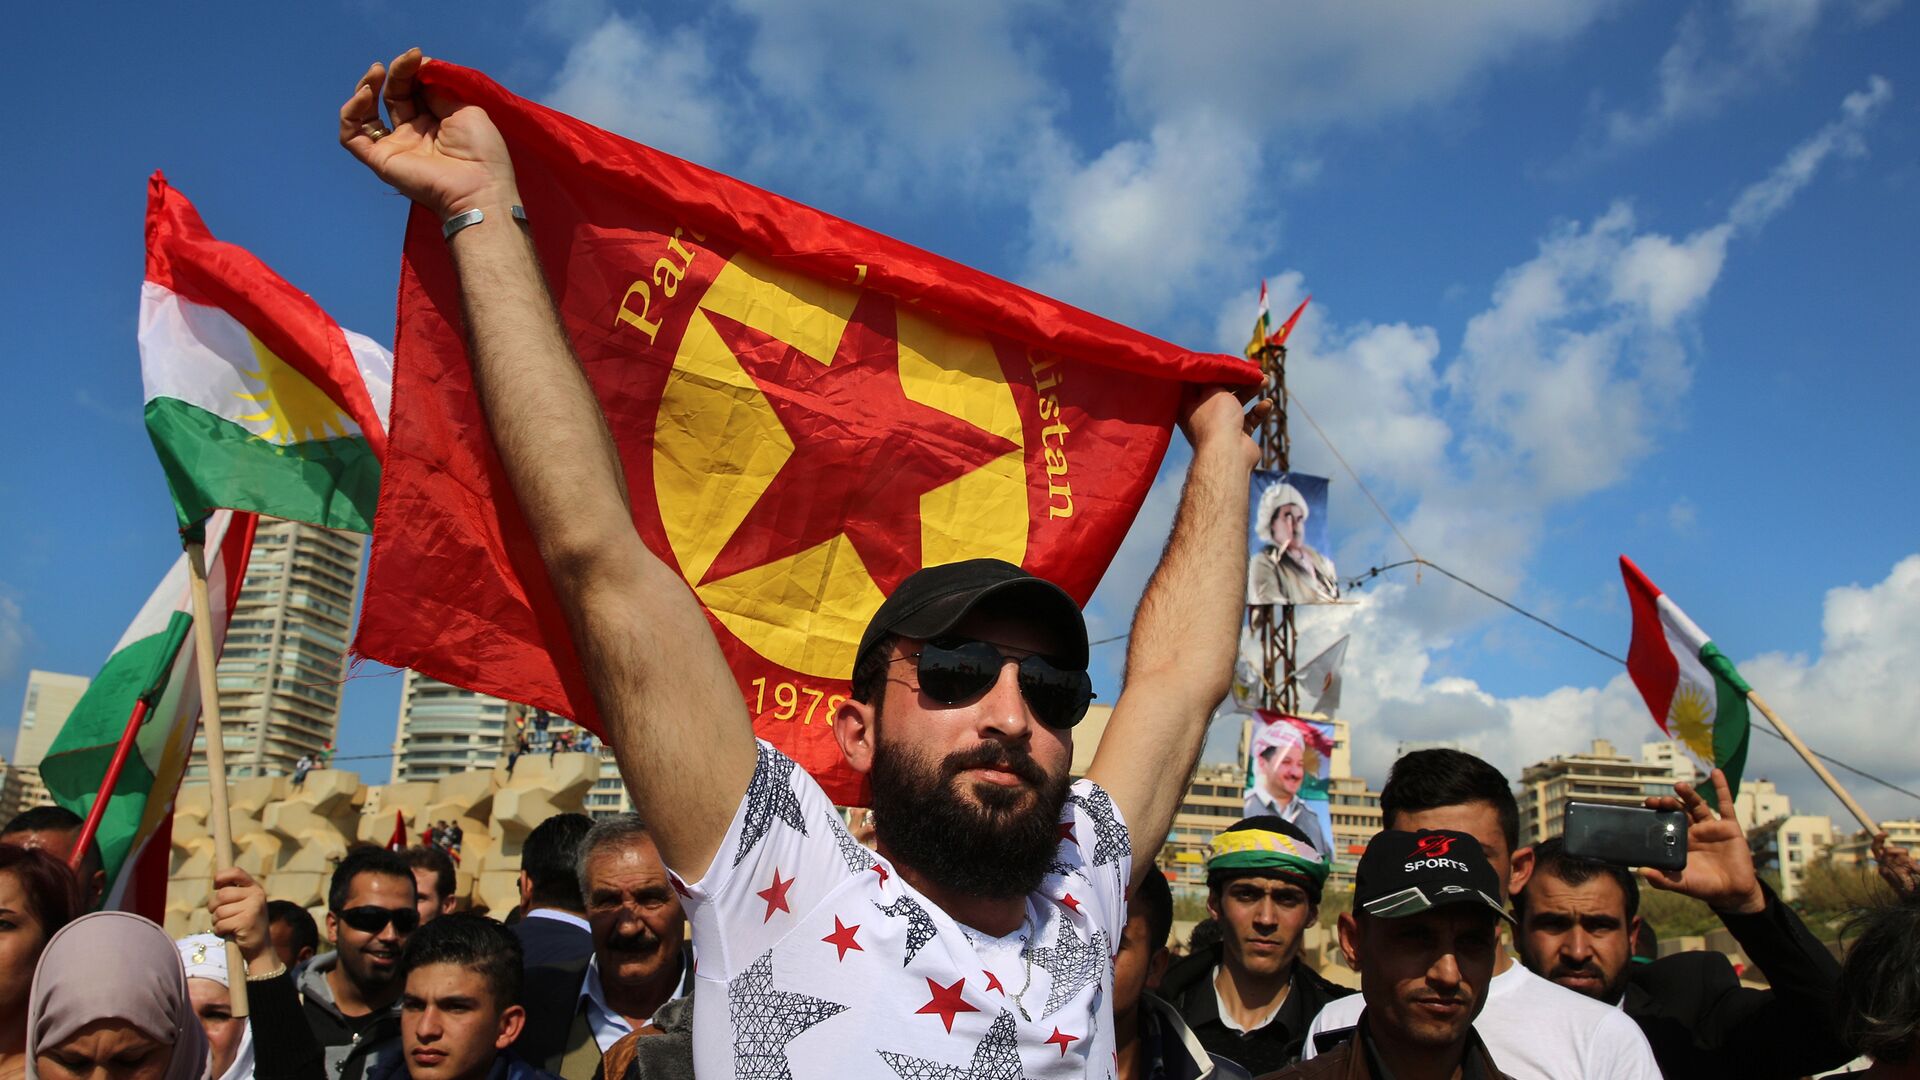 Un hombre con la bandera del Partido de los Trabajadores de Kurdistán (archivo) - Sputnik Mundo, 1920, 27.11.2021